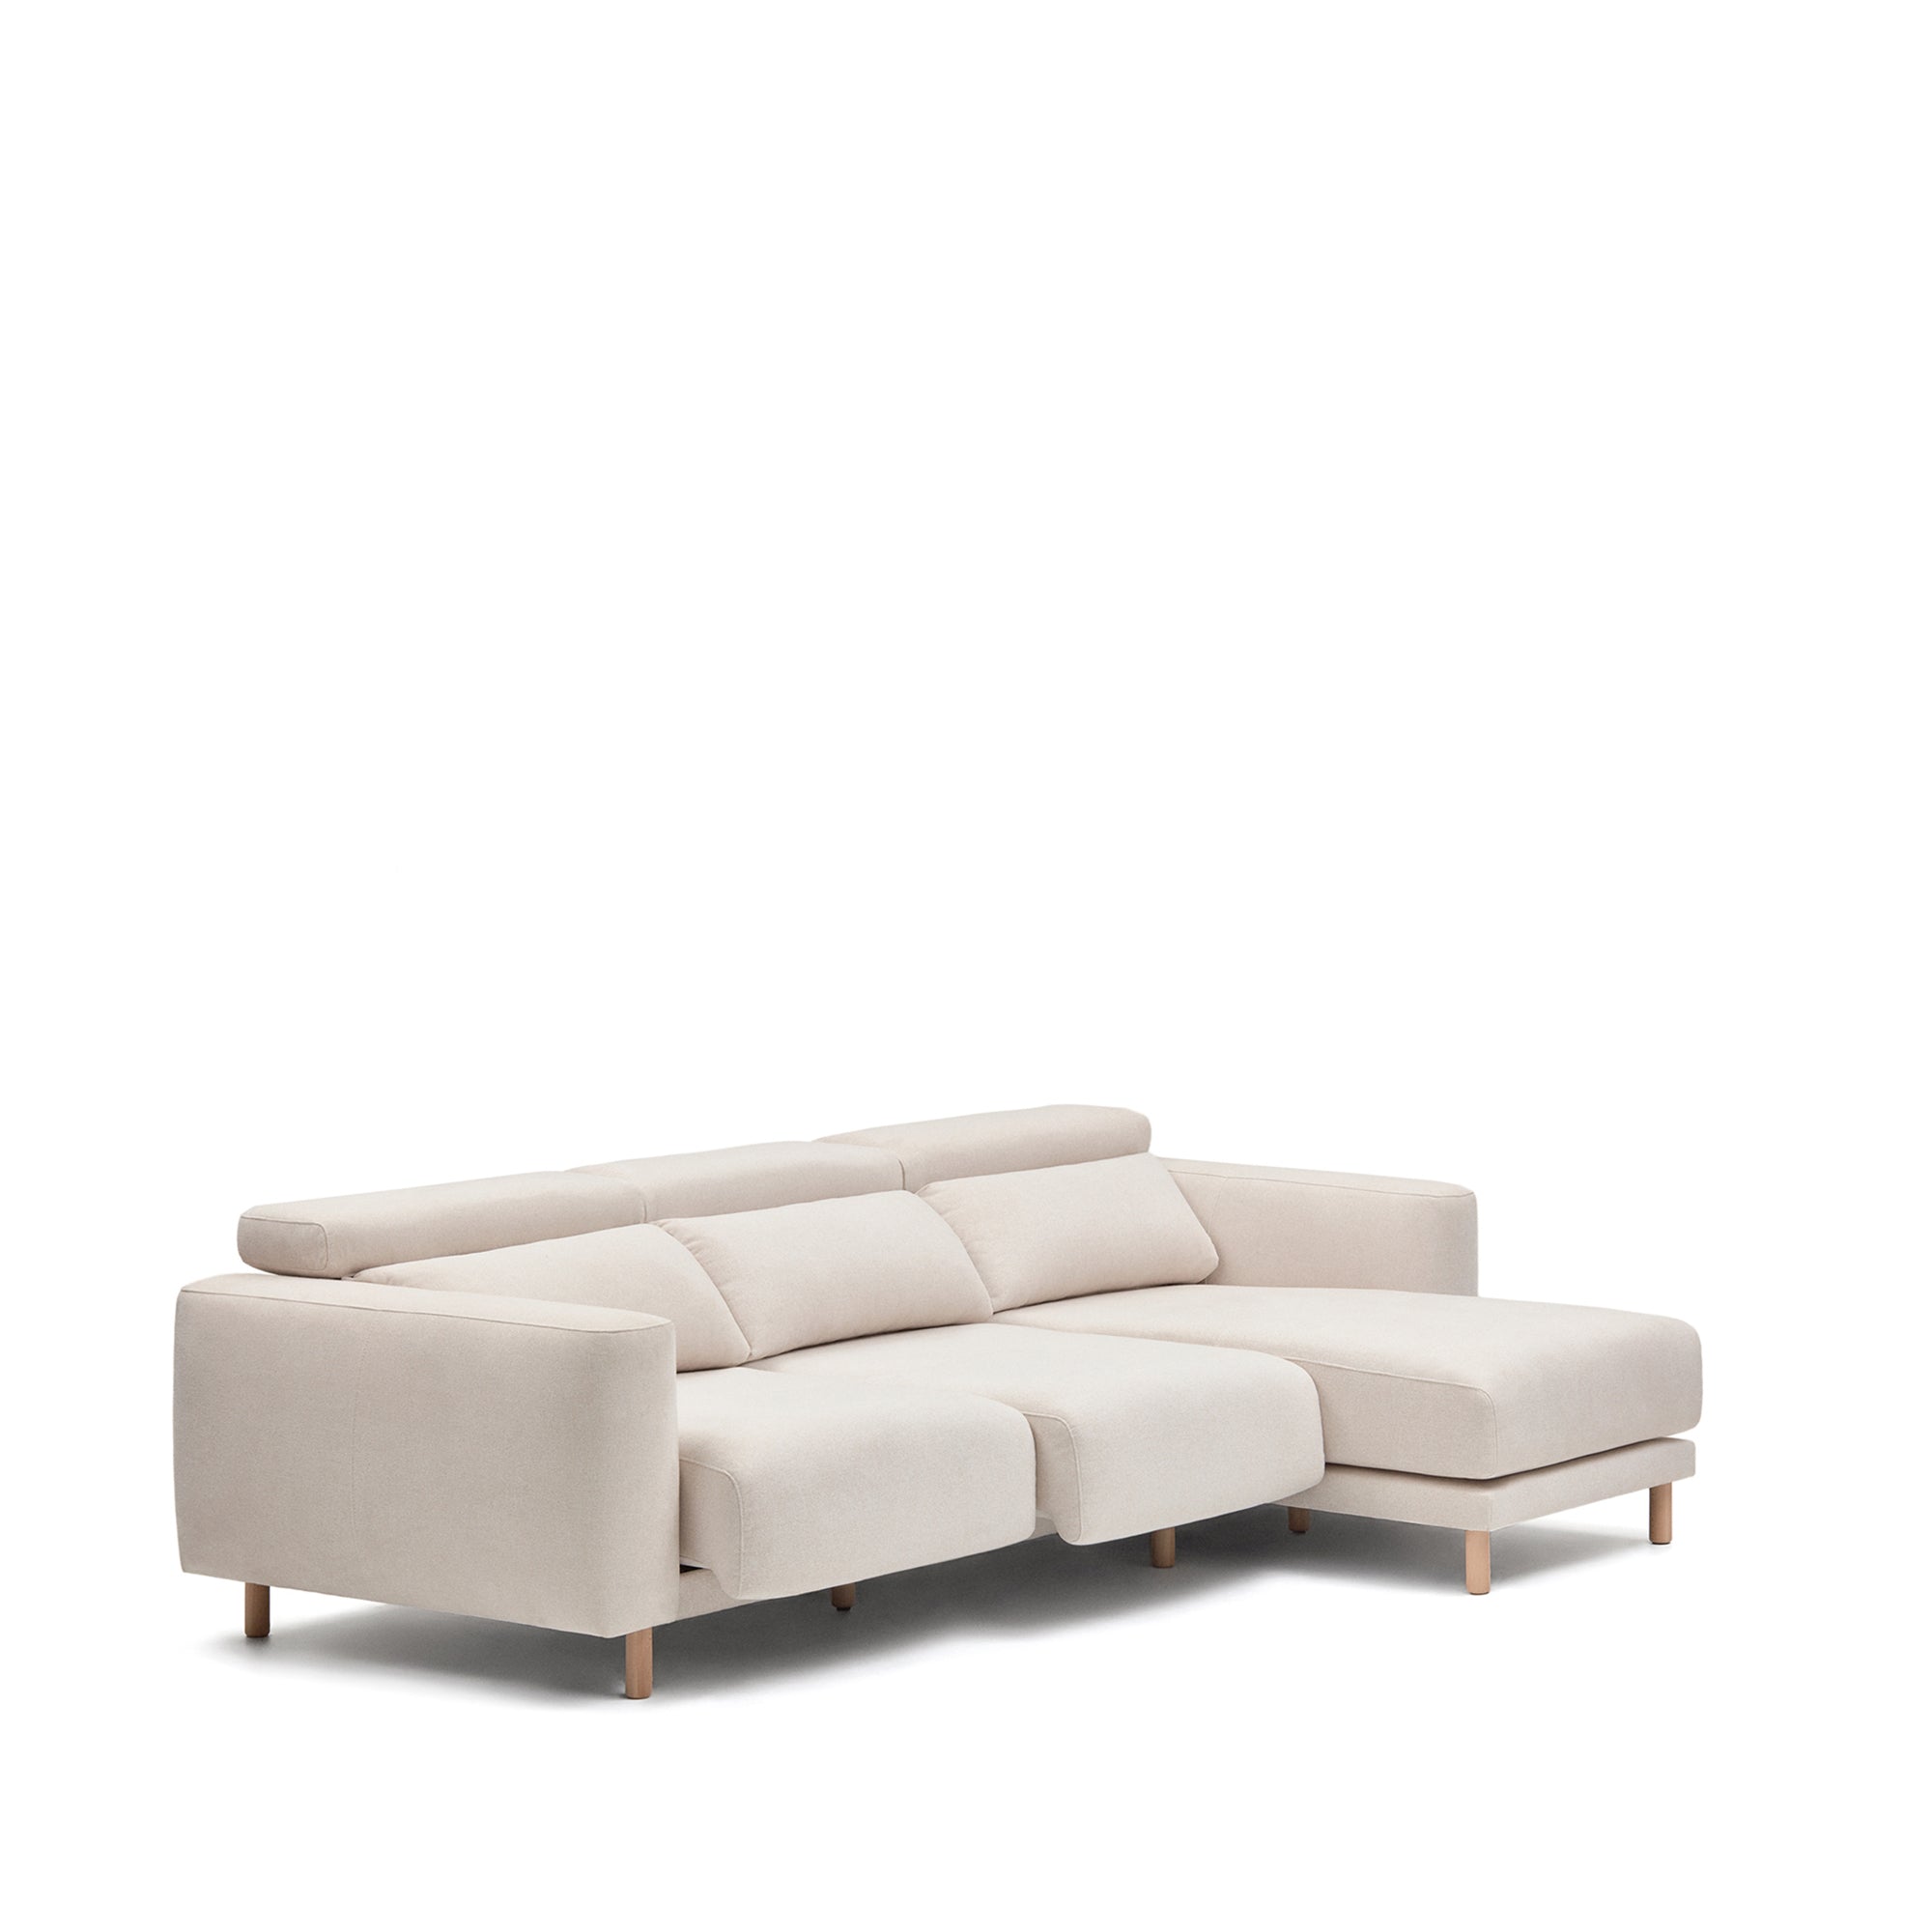 Singa 3 személyes kanapé jobb oldali fekvőfotellel, fehér színben, 296 cm